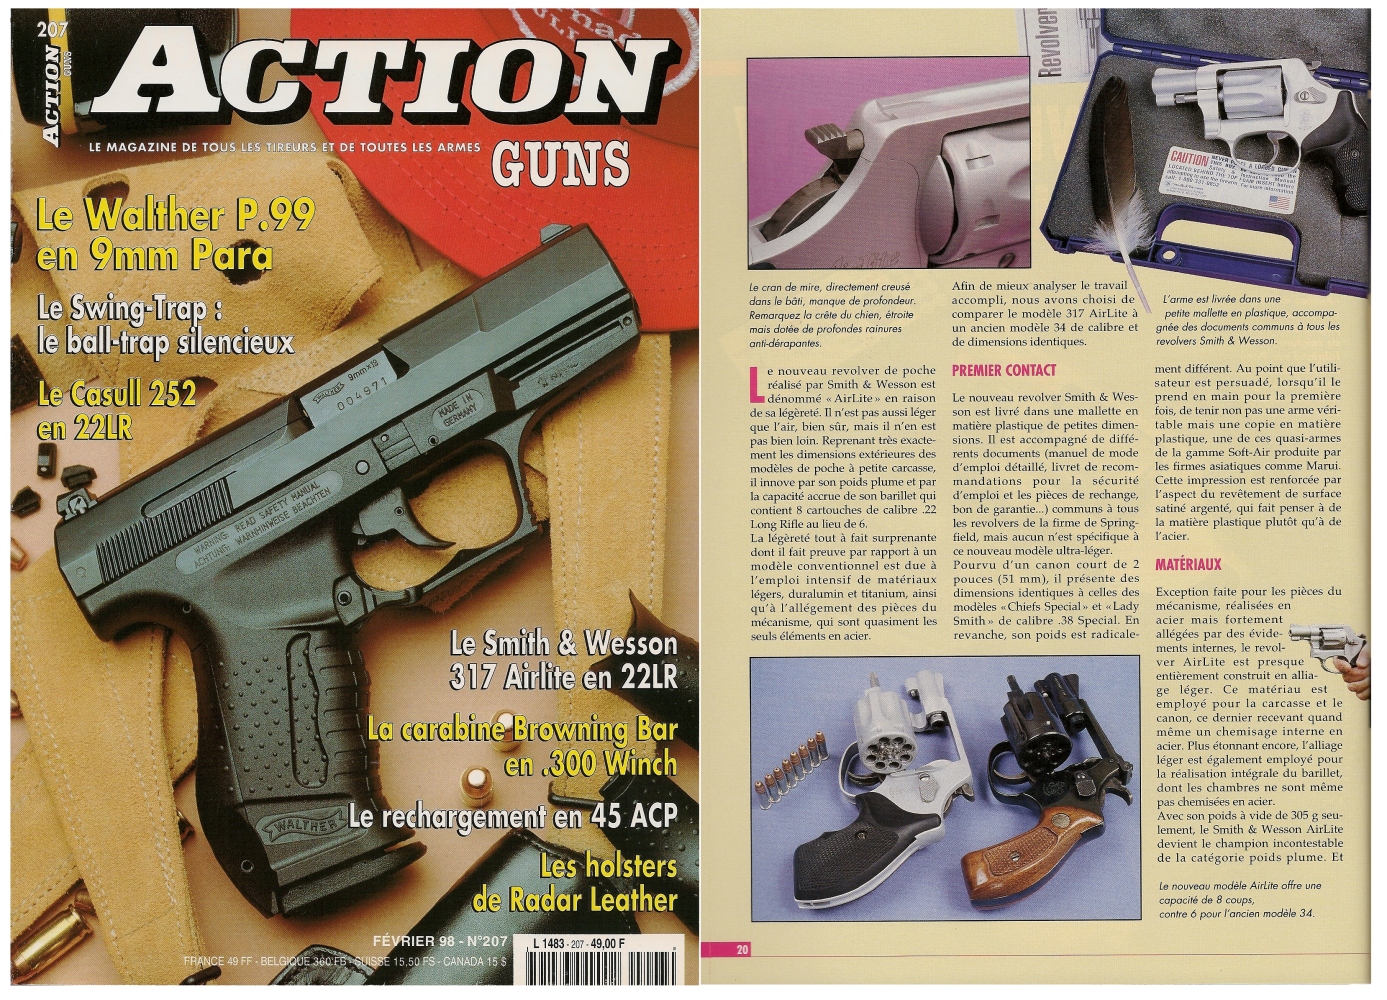 Le banc d’essai du revolver S&W 317 AirLite a été publié sur 6 pages dans le magazine Action Guns n°207 (février 1998).